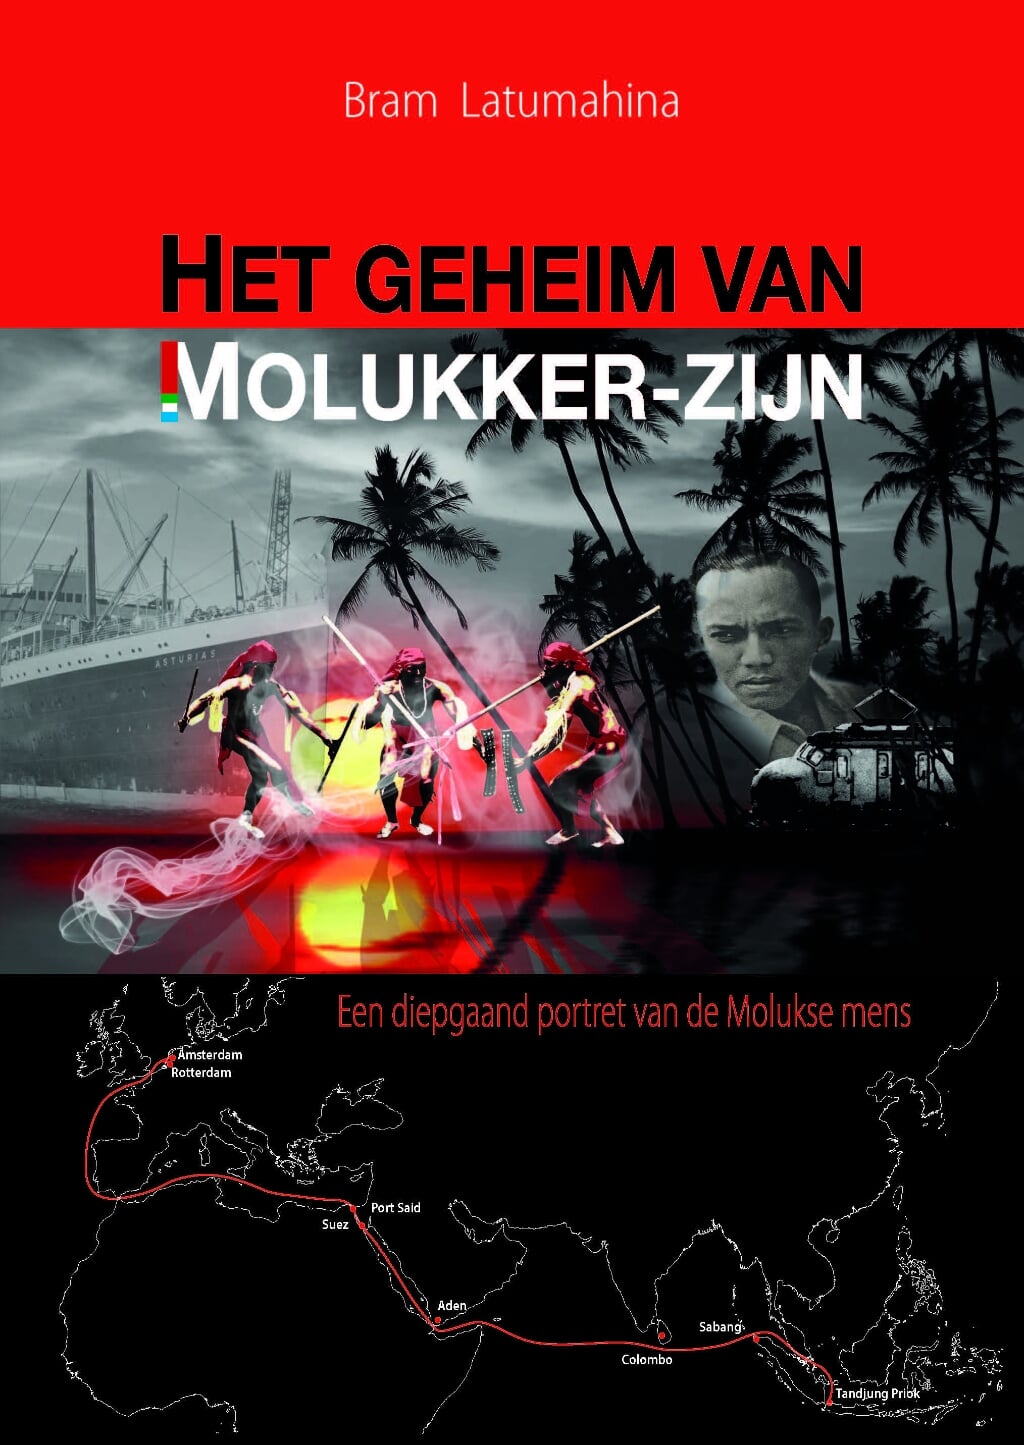 • Zuid-Molukse dansers op de cover van het boek.